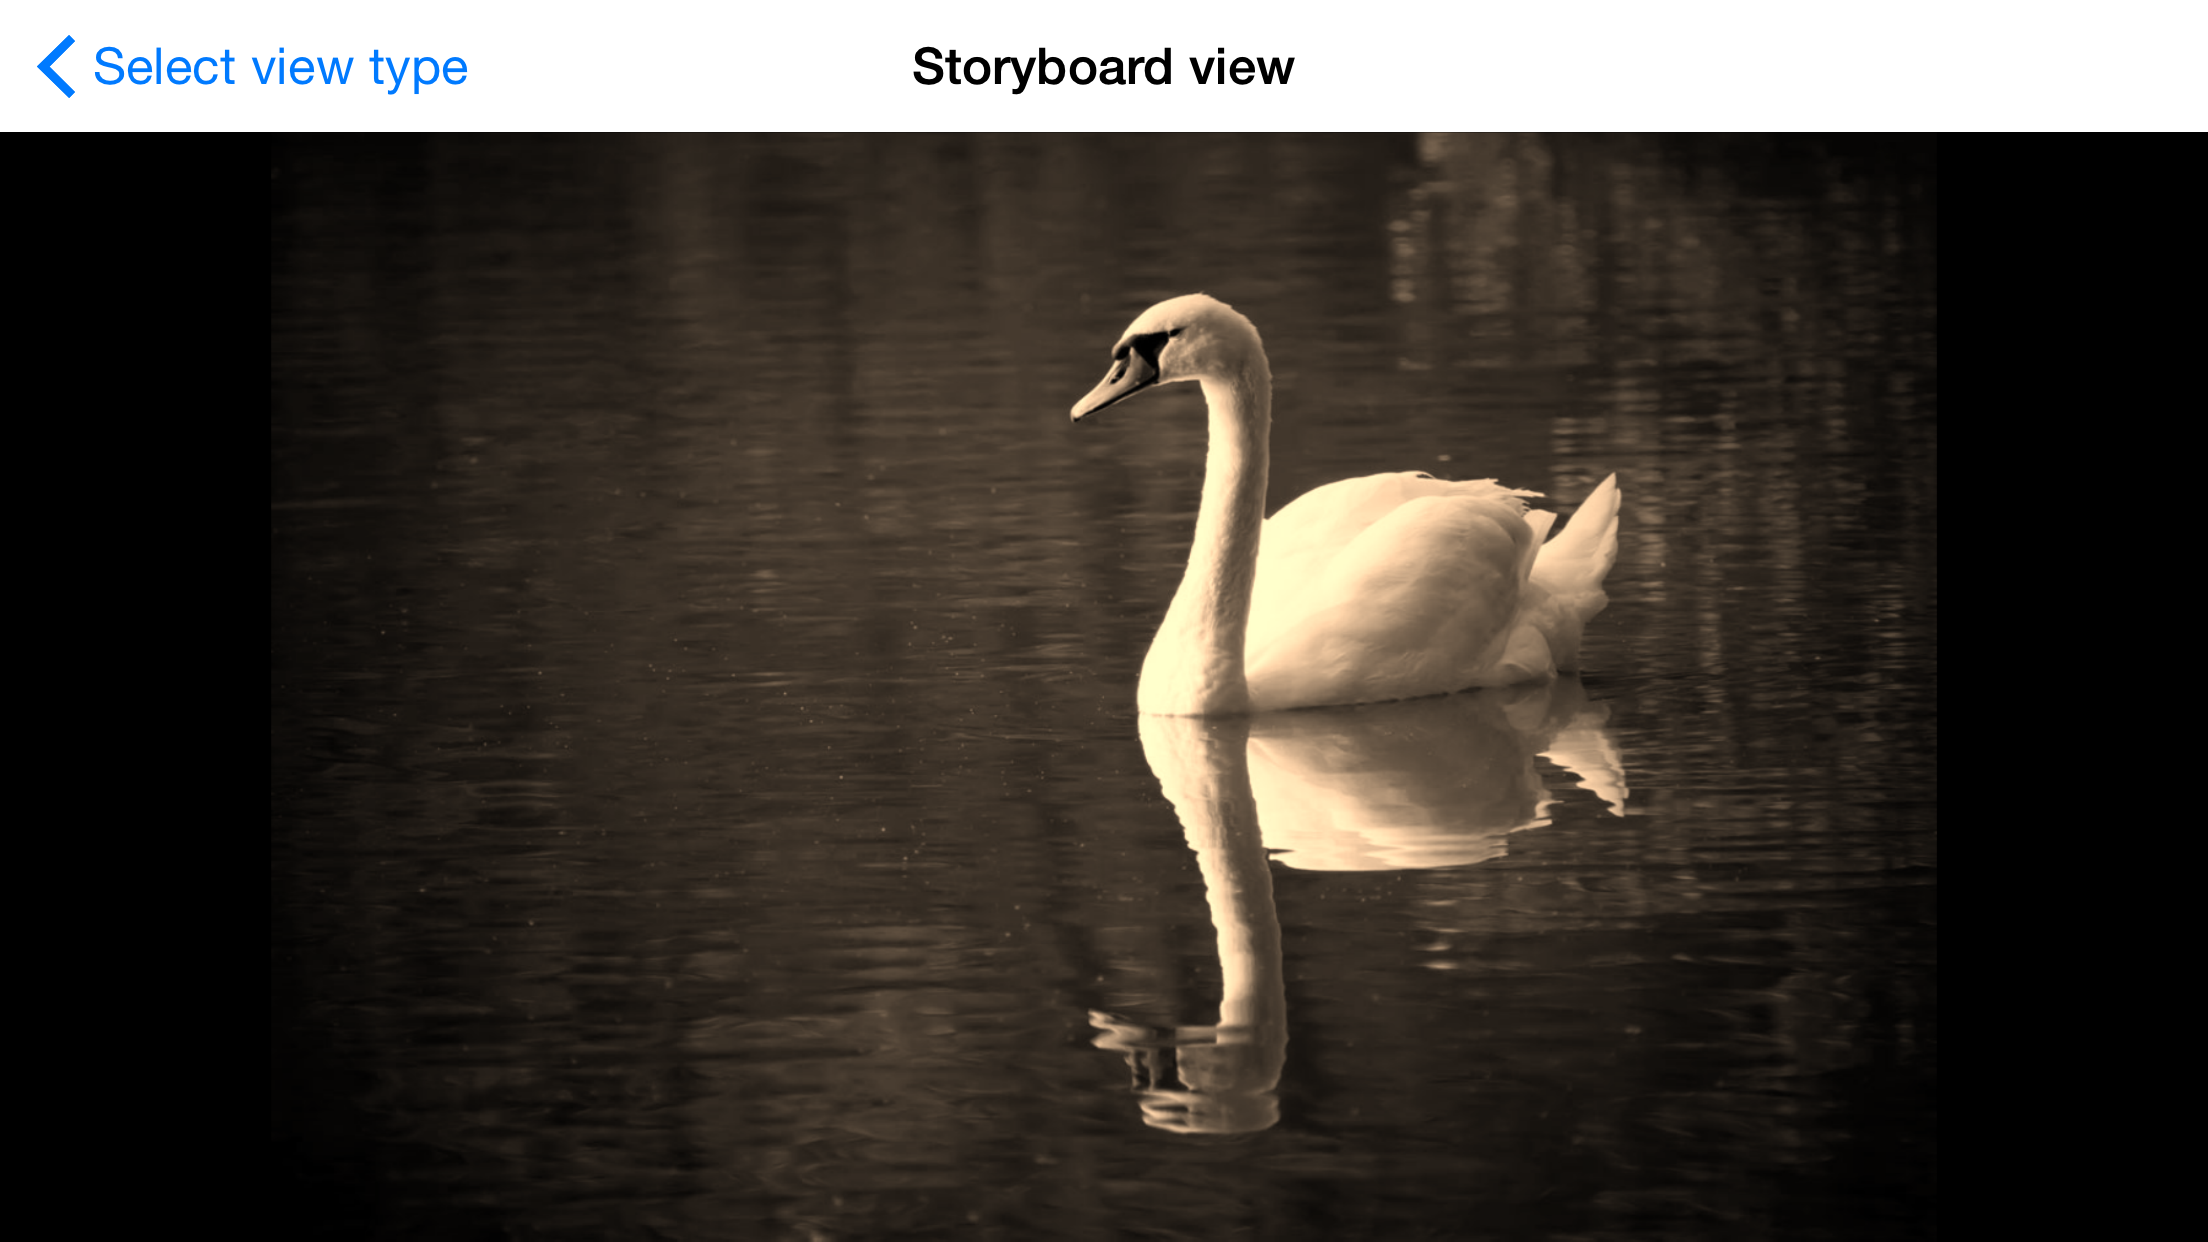 Storybard view